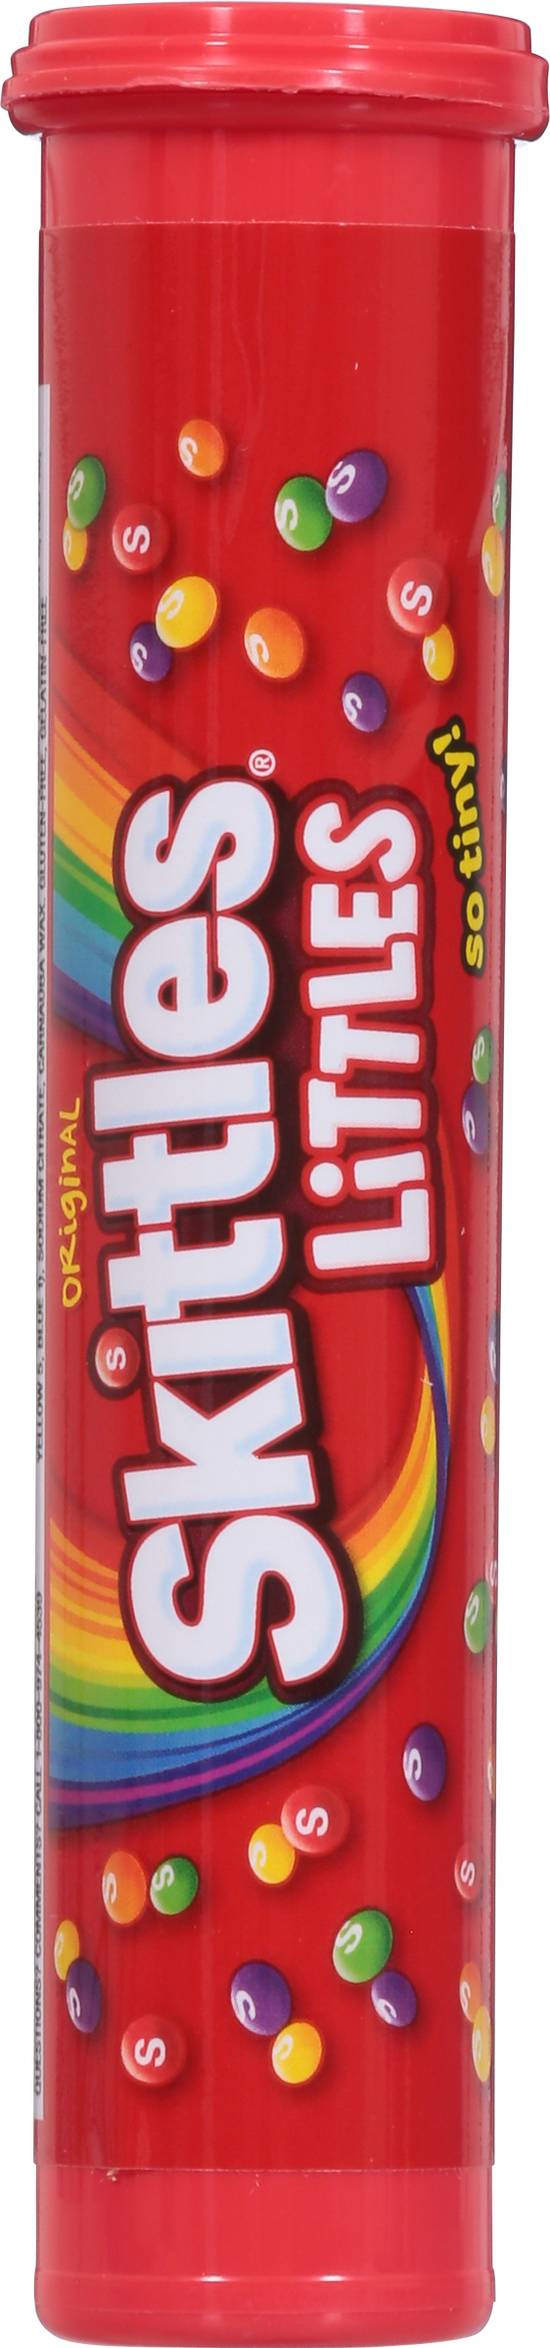 Skittles Littles Original Bite Size Candies